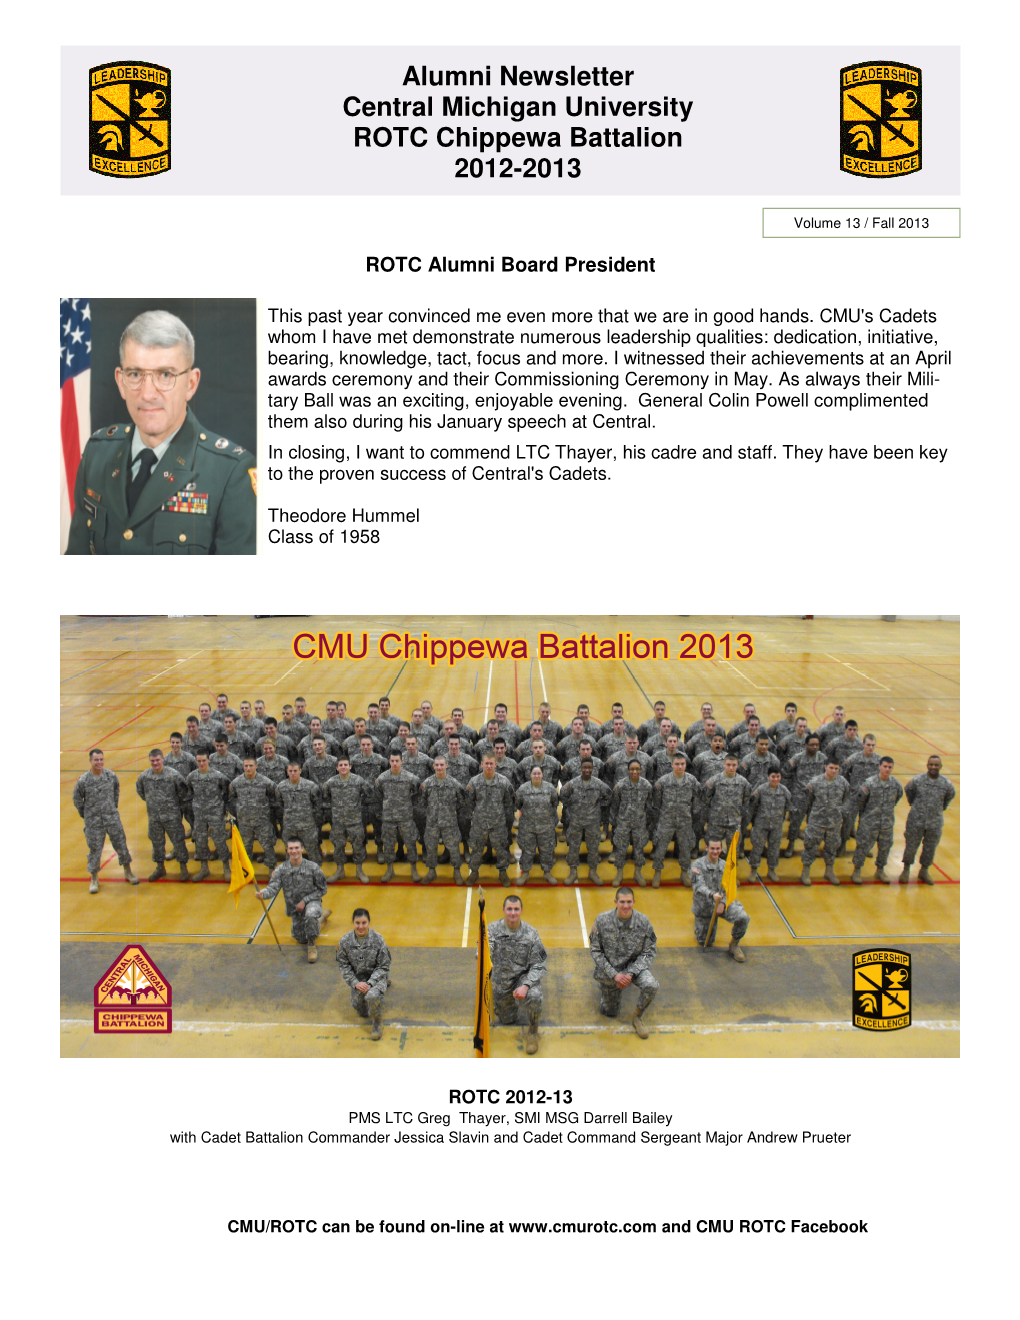 Fall 2013 ROTC Alumni Newsletter